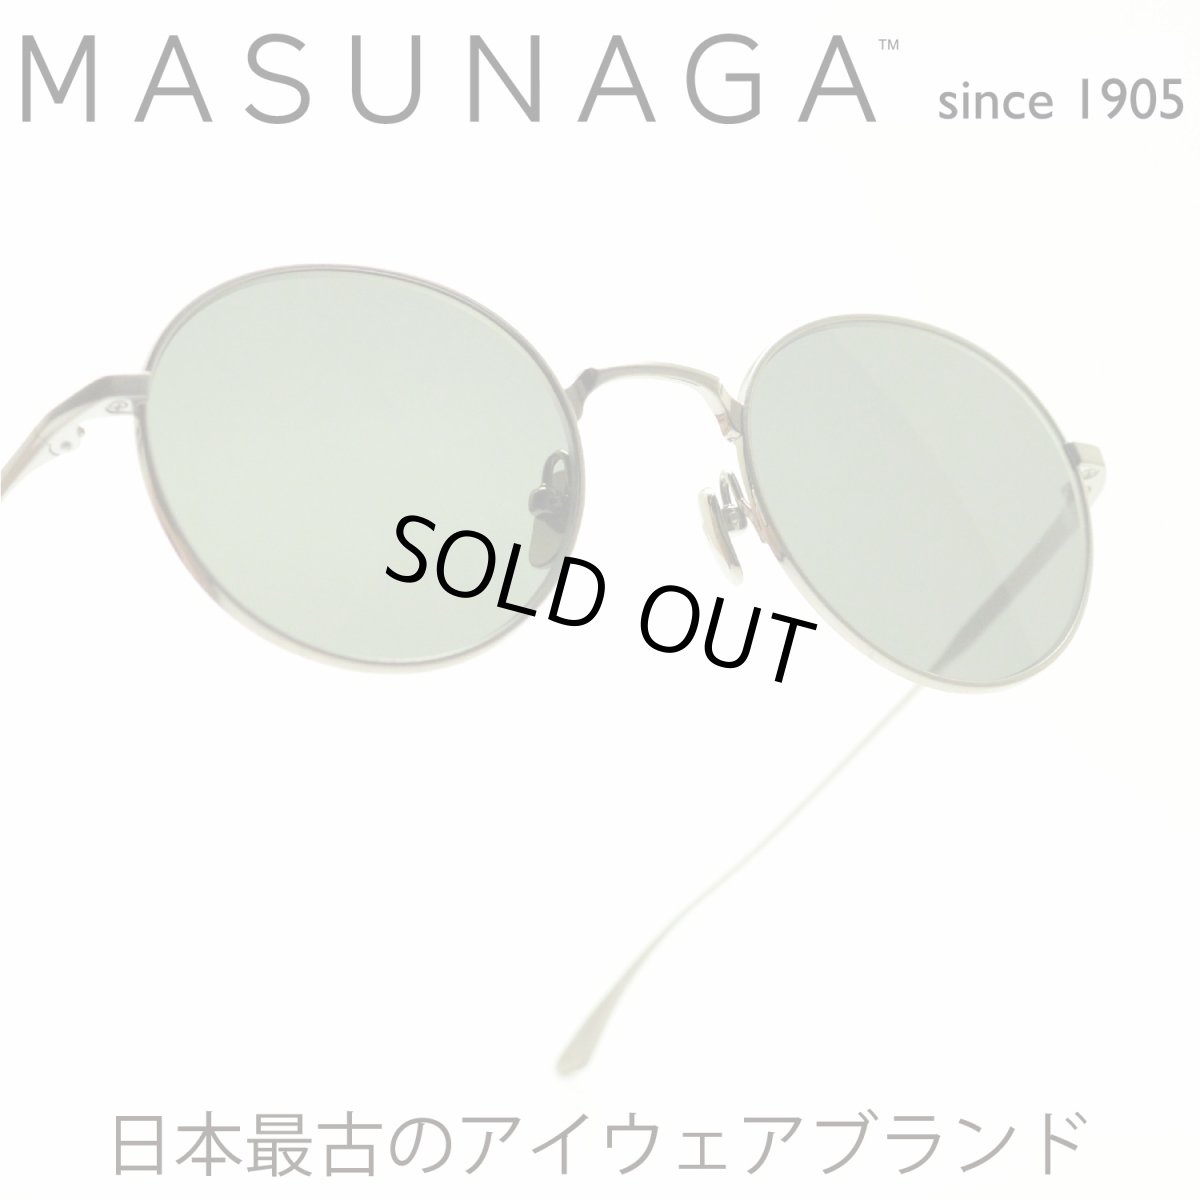 画像1: 増永眼鏡 MASUNAGA since 1905 WRIGHT col-S12 SILVER メガネ 眼鏡 めがね メンズ レディース おしゃれ ブランド 人気 おすすめ フレーム 流行り 度付き レンズ (1)